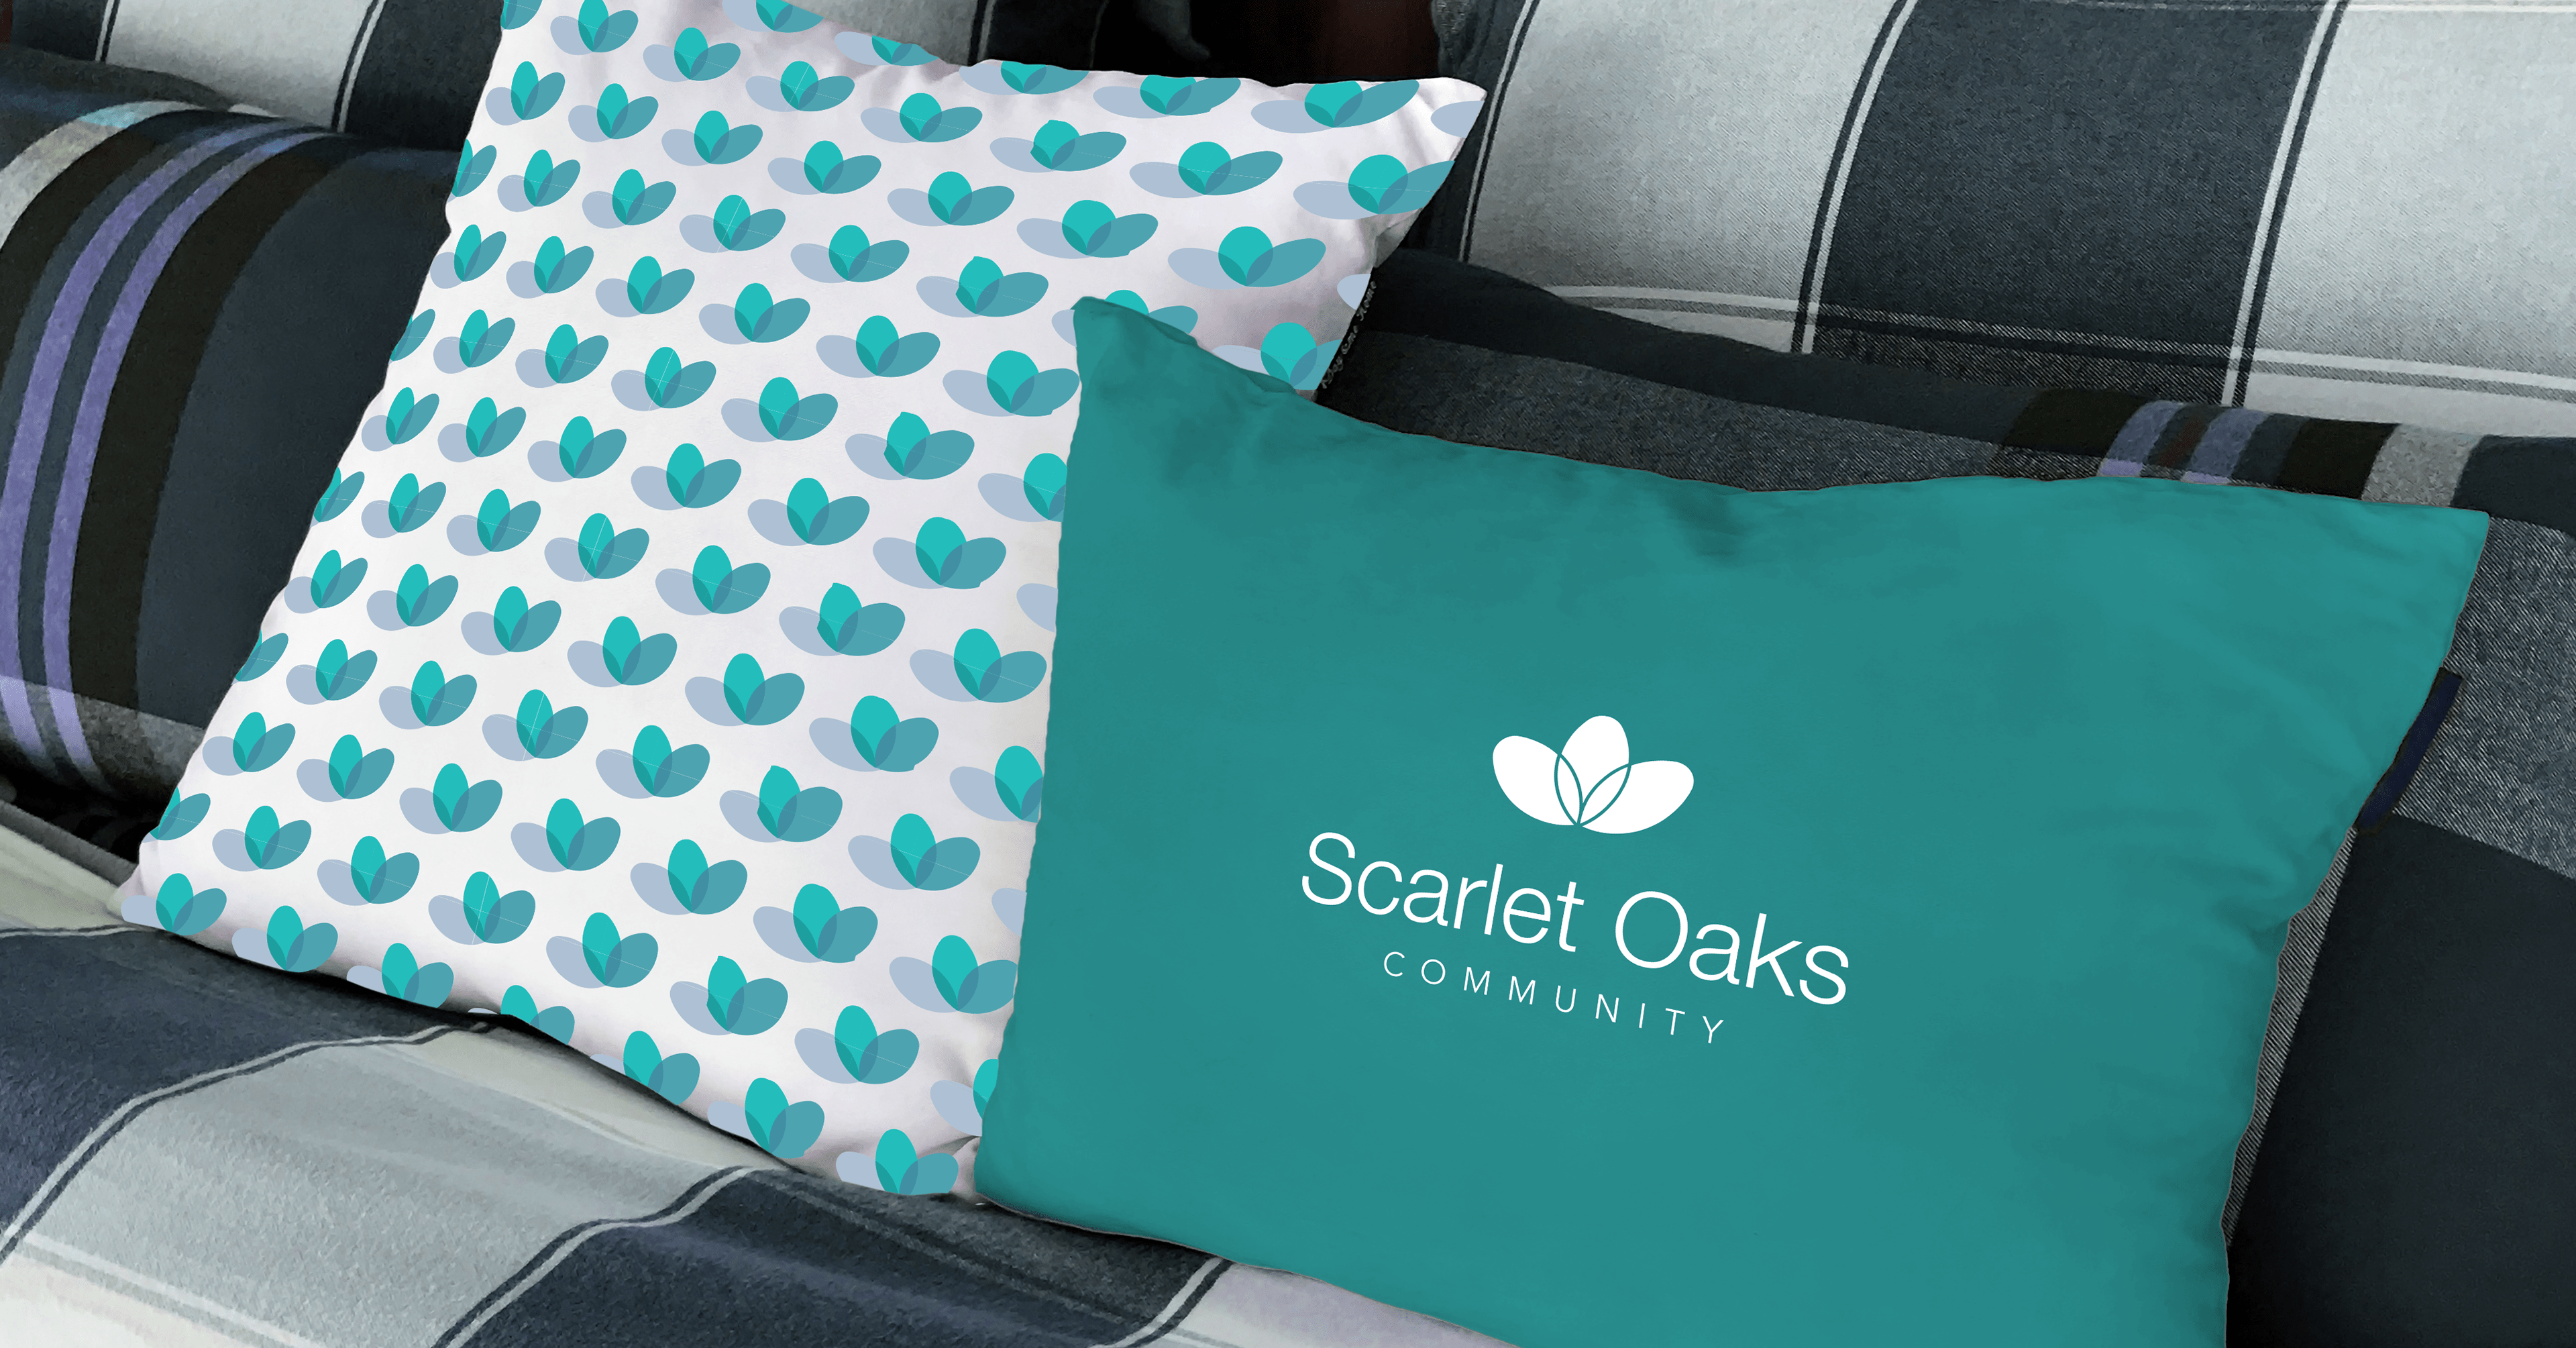 Scarlet Oaks Pillow - iDesign Branding